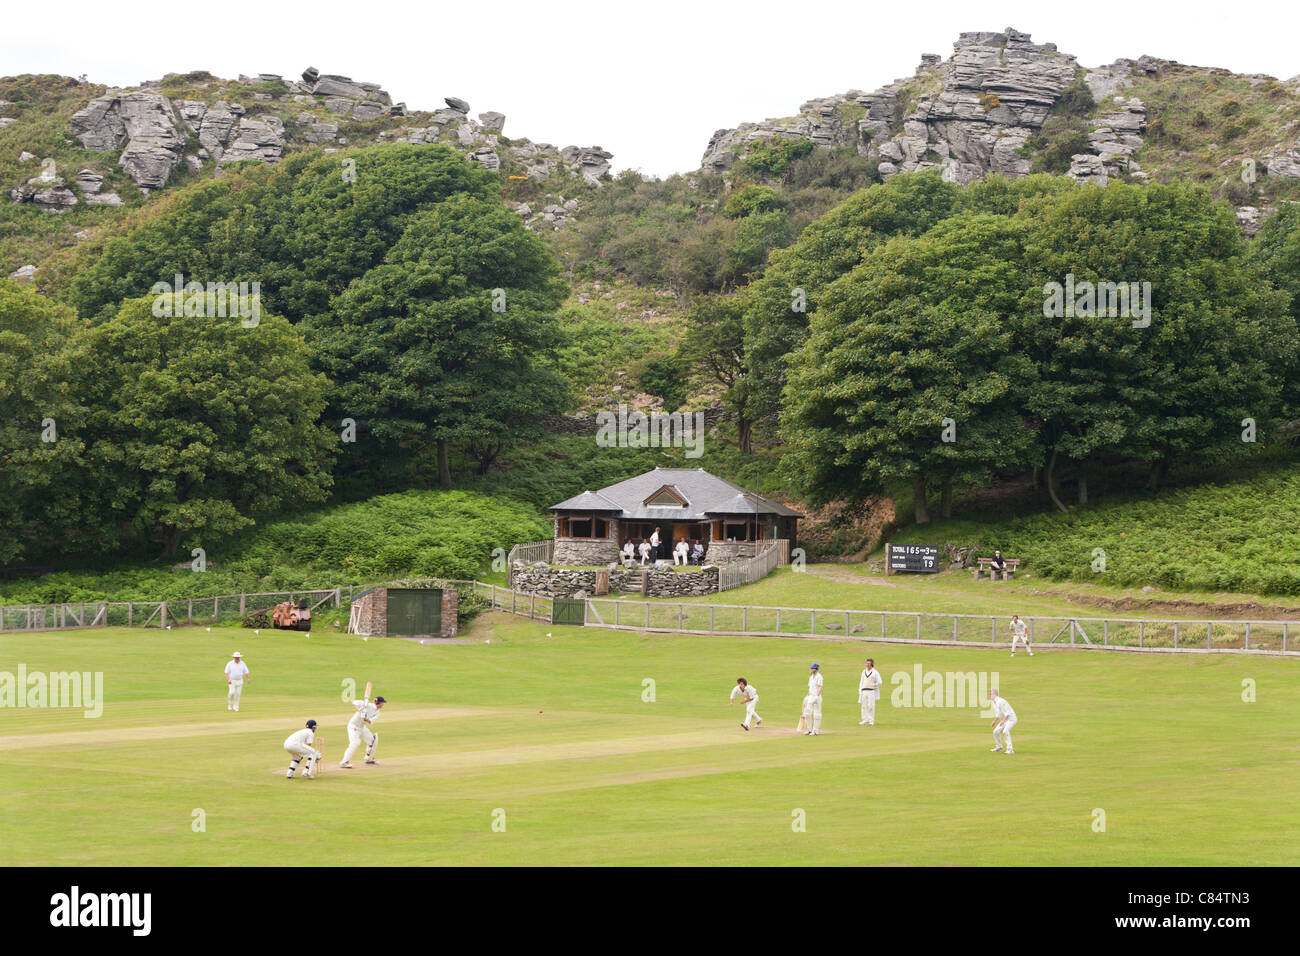 Ein Cricket-Spiel, das auf dem herrlichen Platz im Valley of the Rocks, Lynton, Devon UK, stattfindet Stockfoto